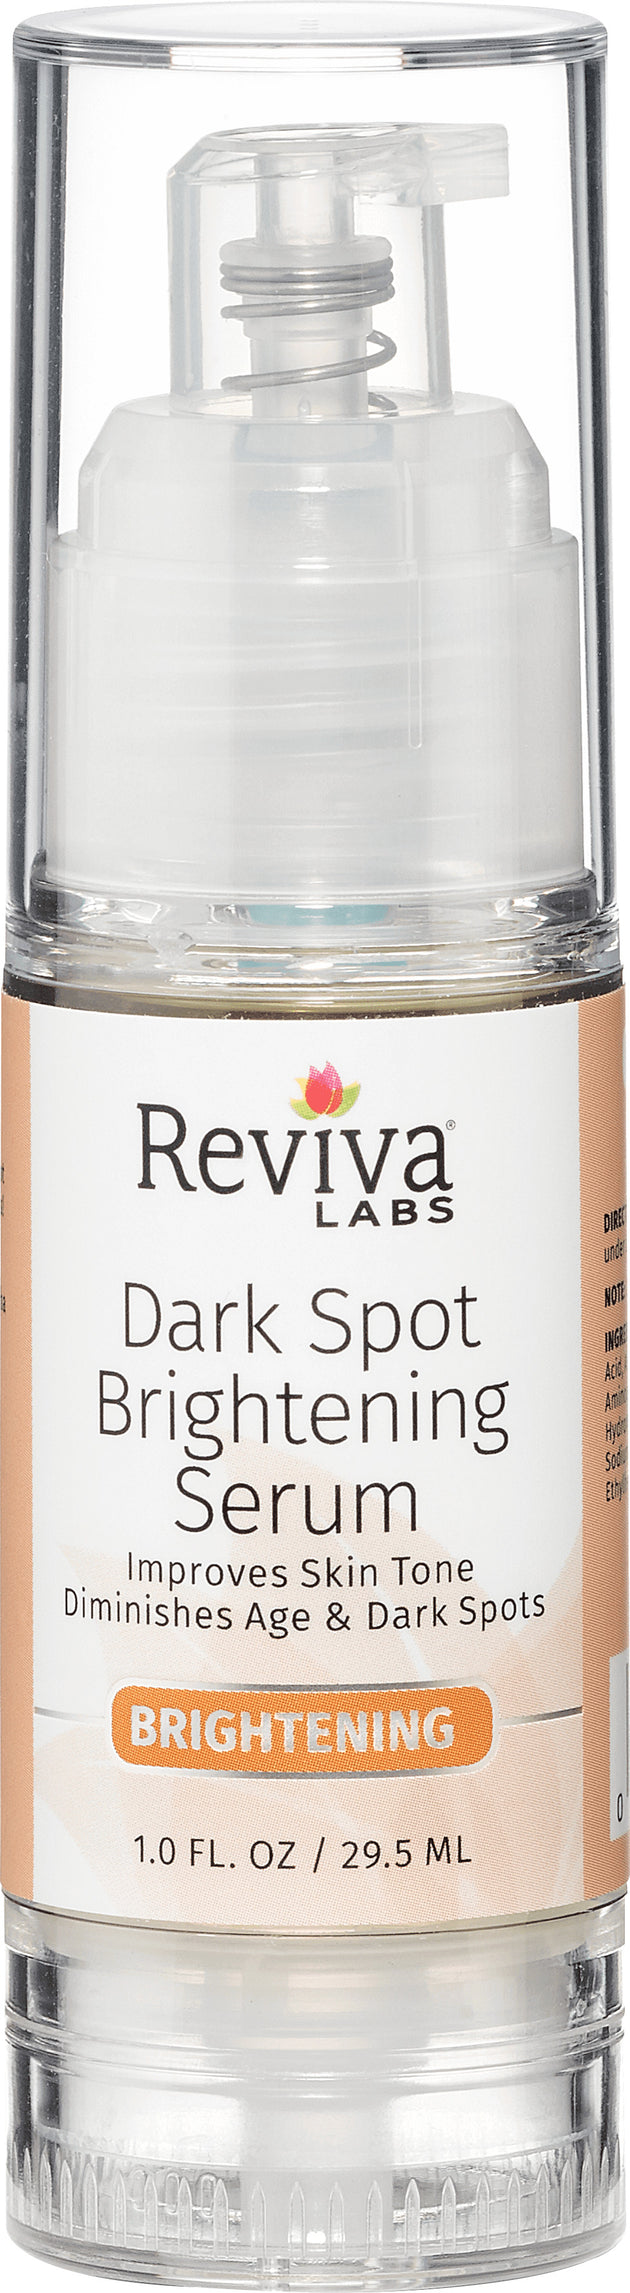 Dark Spot Brightening Serum, 1 Fl Oz (29.5 mL) Serum , 20% Off - Everyday [On]